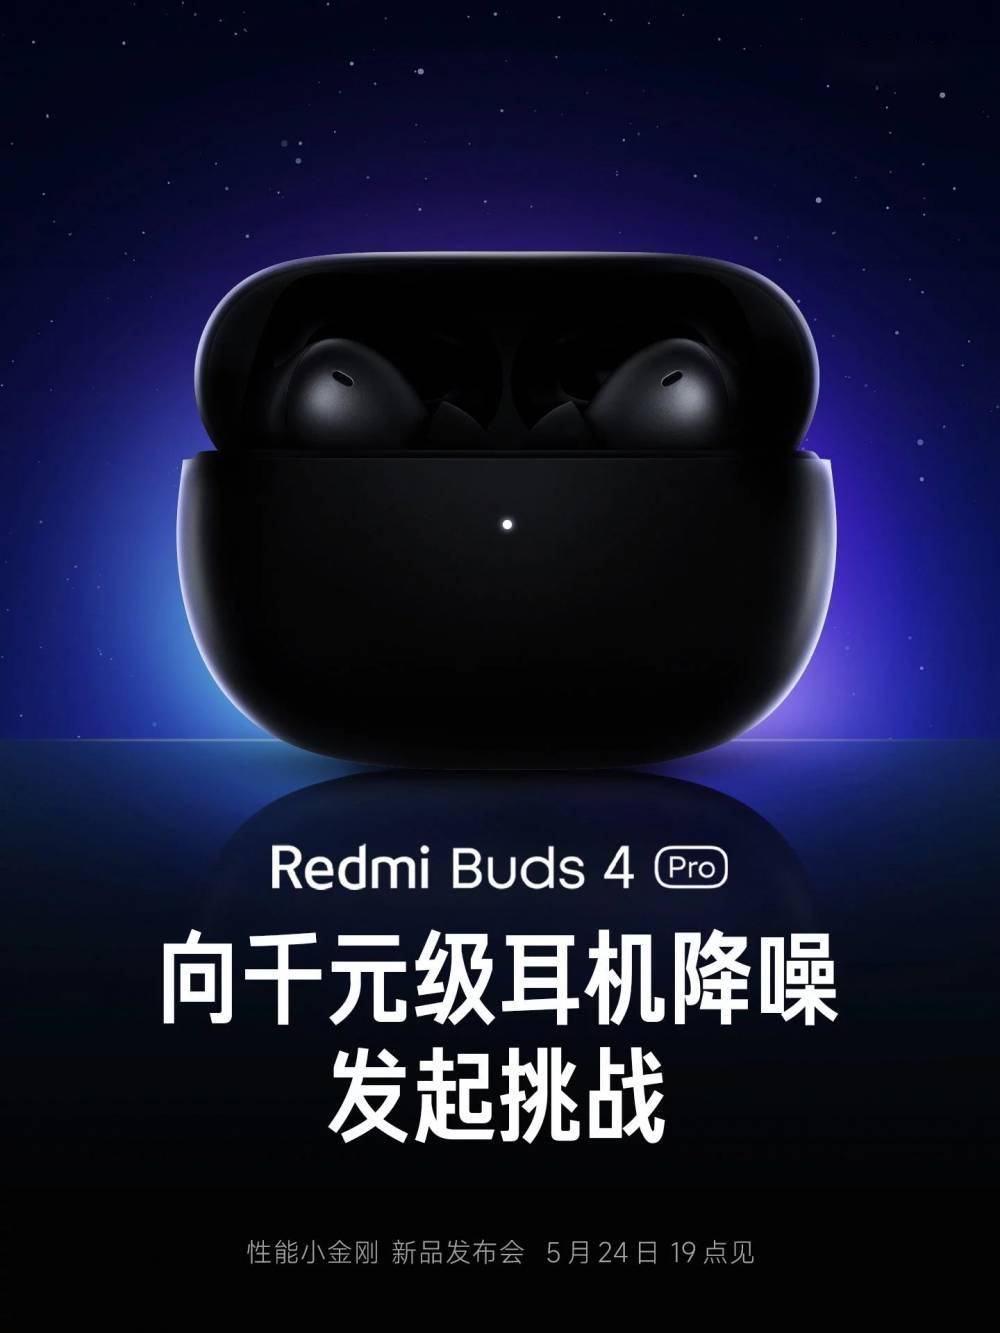 小米Redmi Buds 4 Pro 无线蓝牙降噪耳机即将上线_手机搜狐网